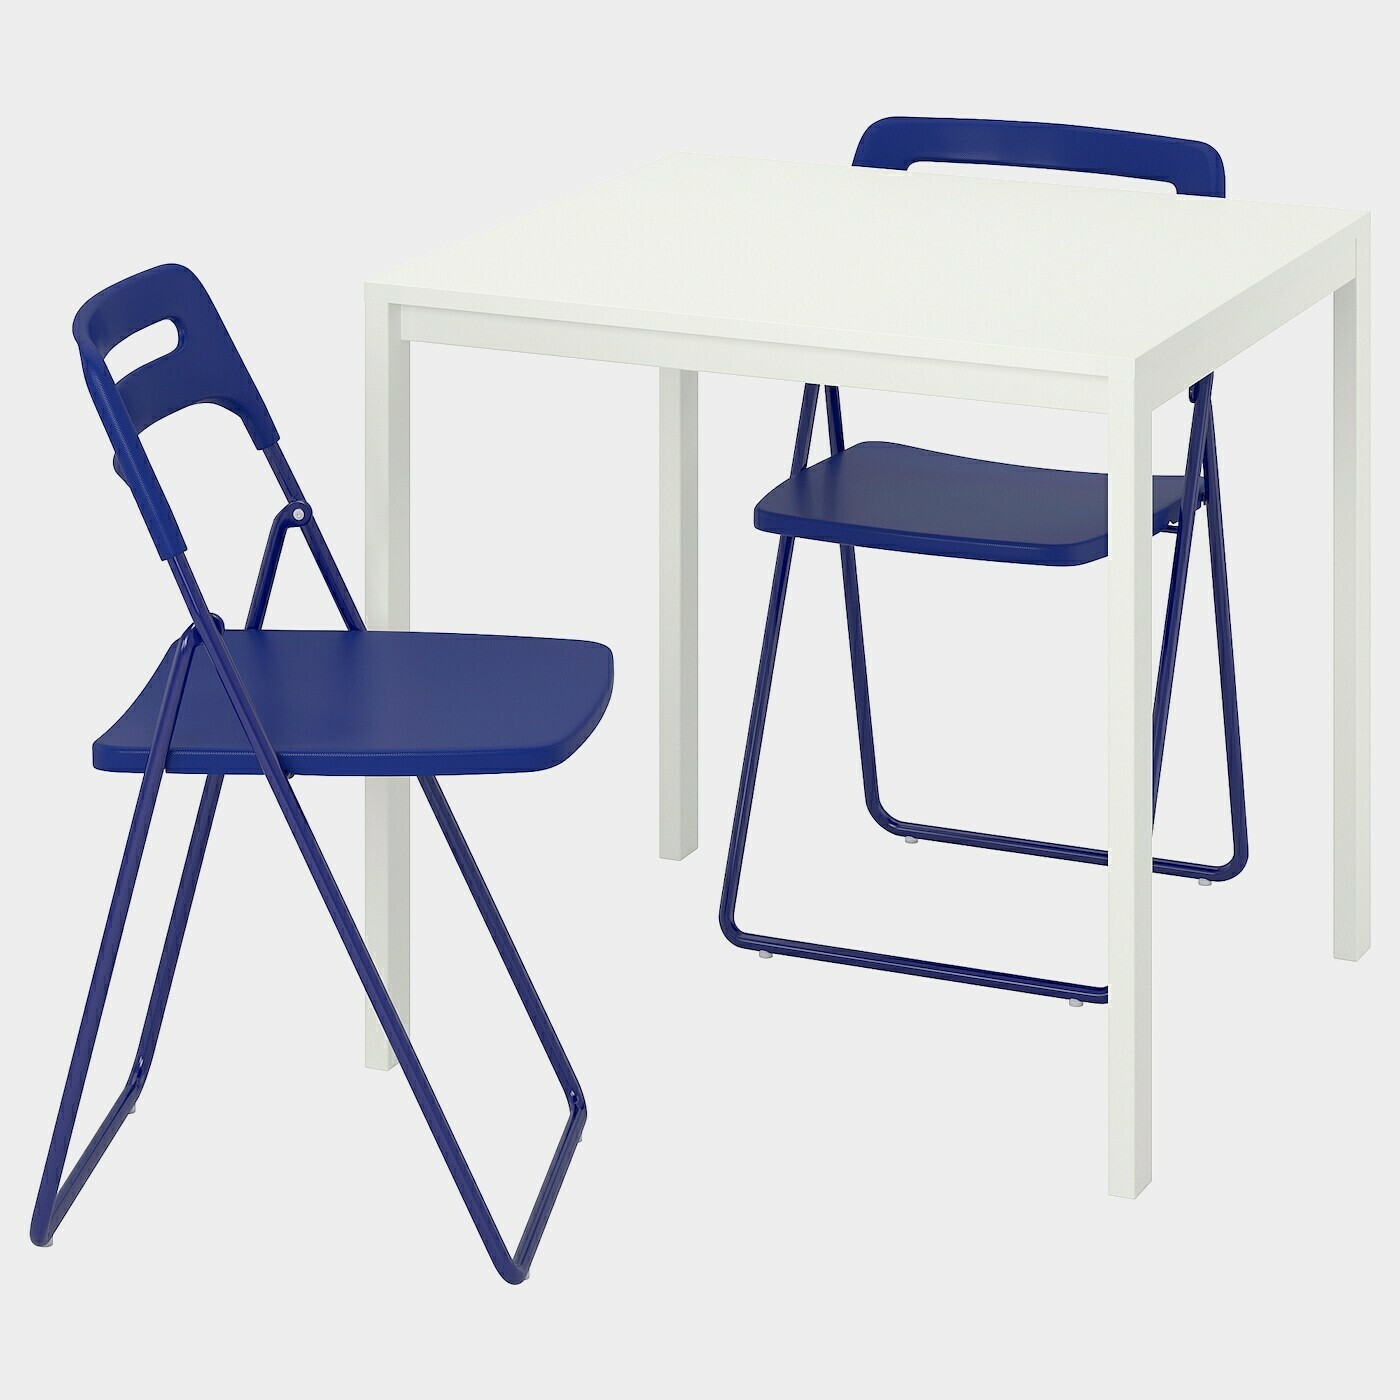 MELLTORP / NISSE Tisch und 2 Klappstühle  - Essplatzgruppe - Möbel Ideen für dein Zuhause von Home Trends. Möbel Trends von Social Media Influencer für dein Skandi Zuhause.